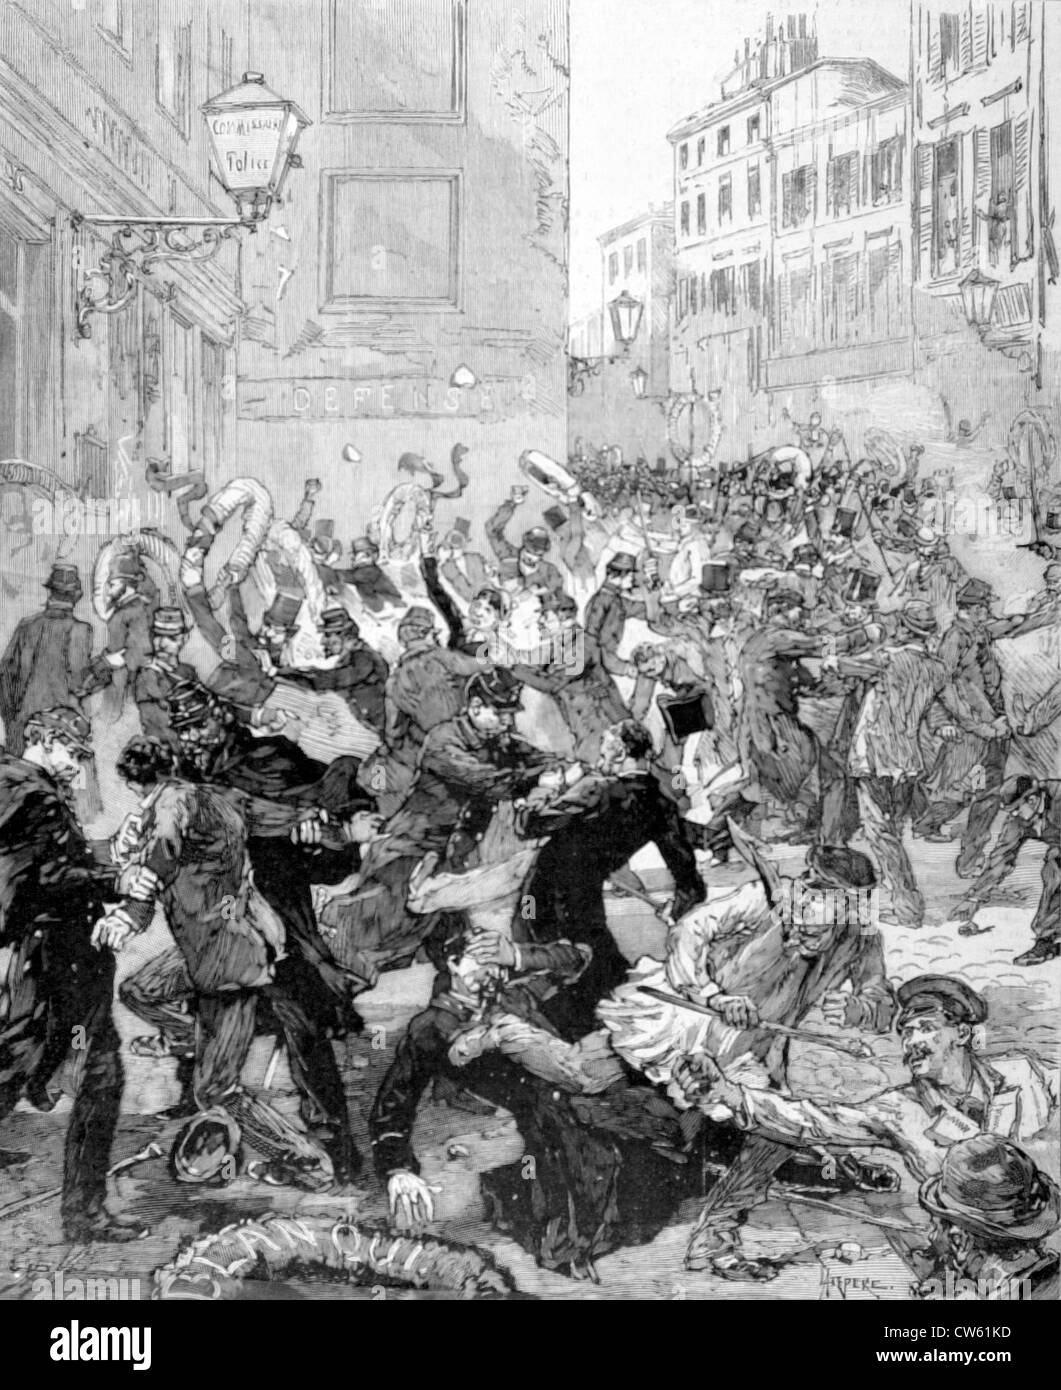 Brawl en face du poste de police, rue de la Roquette, dans "Le Monde illustré", 1-21-1882 Banque D'Images